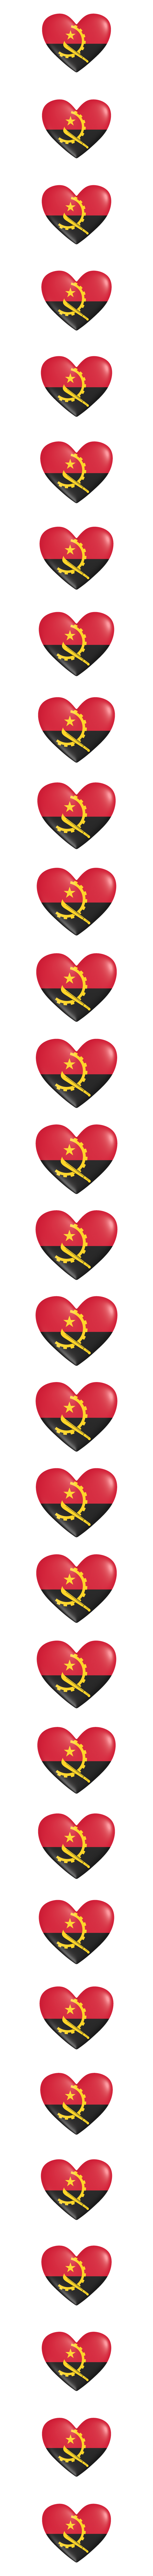 Angola heart